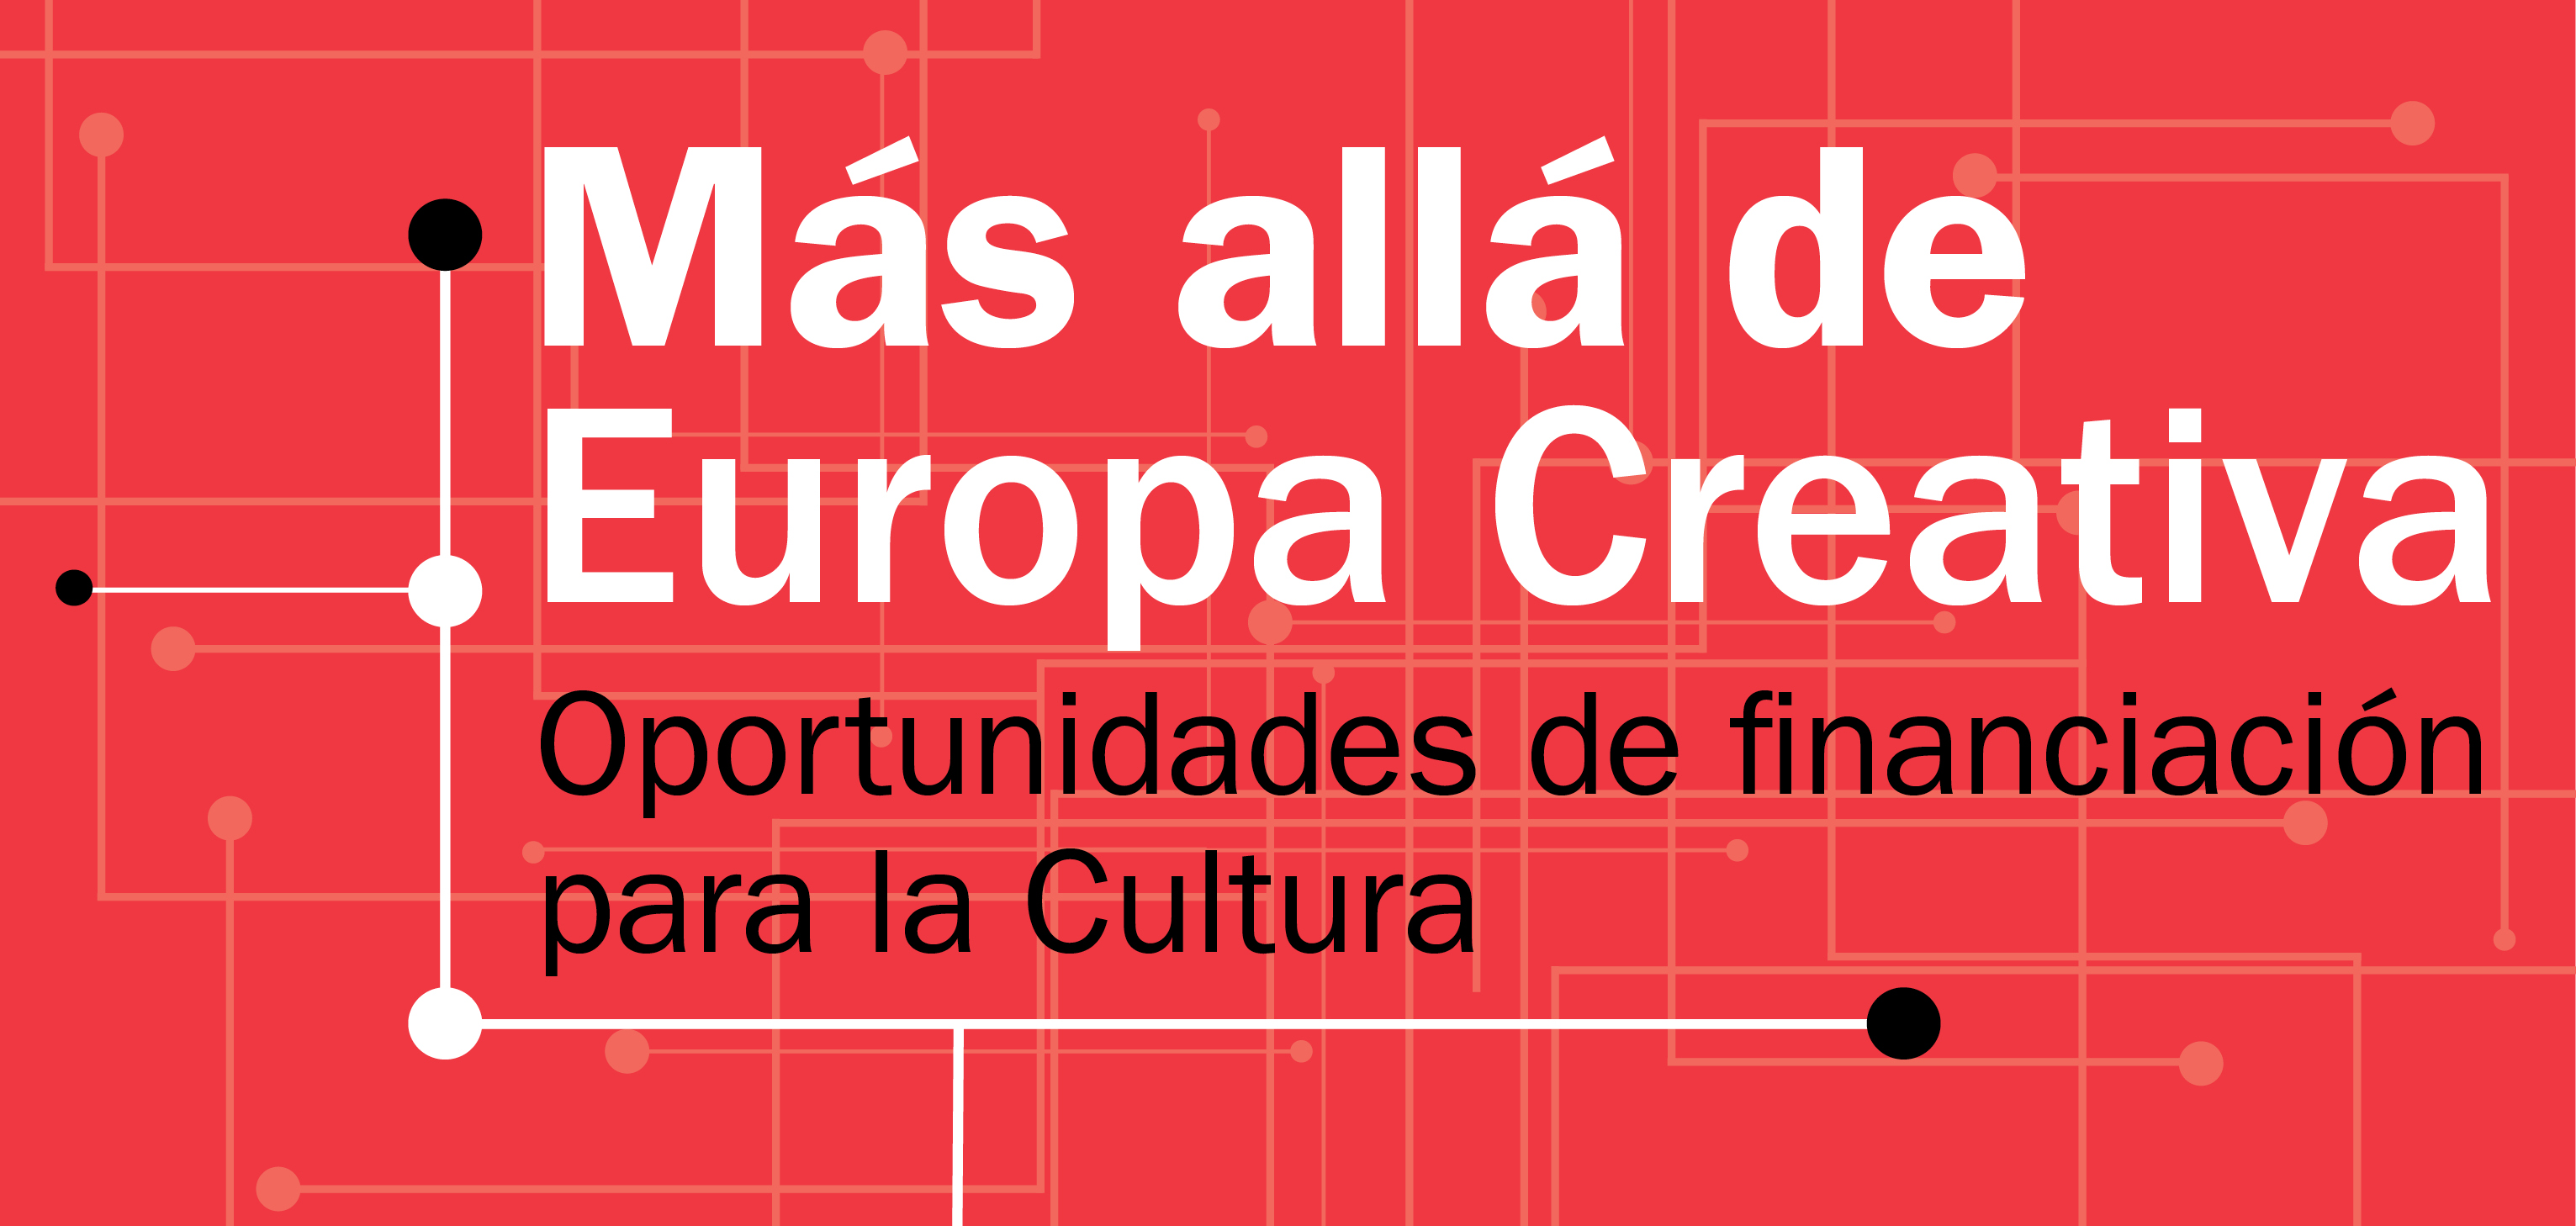 Más allá de Europa Creativa. Oportunidades de financiación para la Cultura   